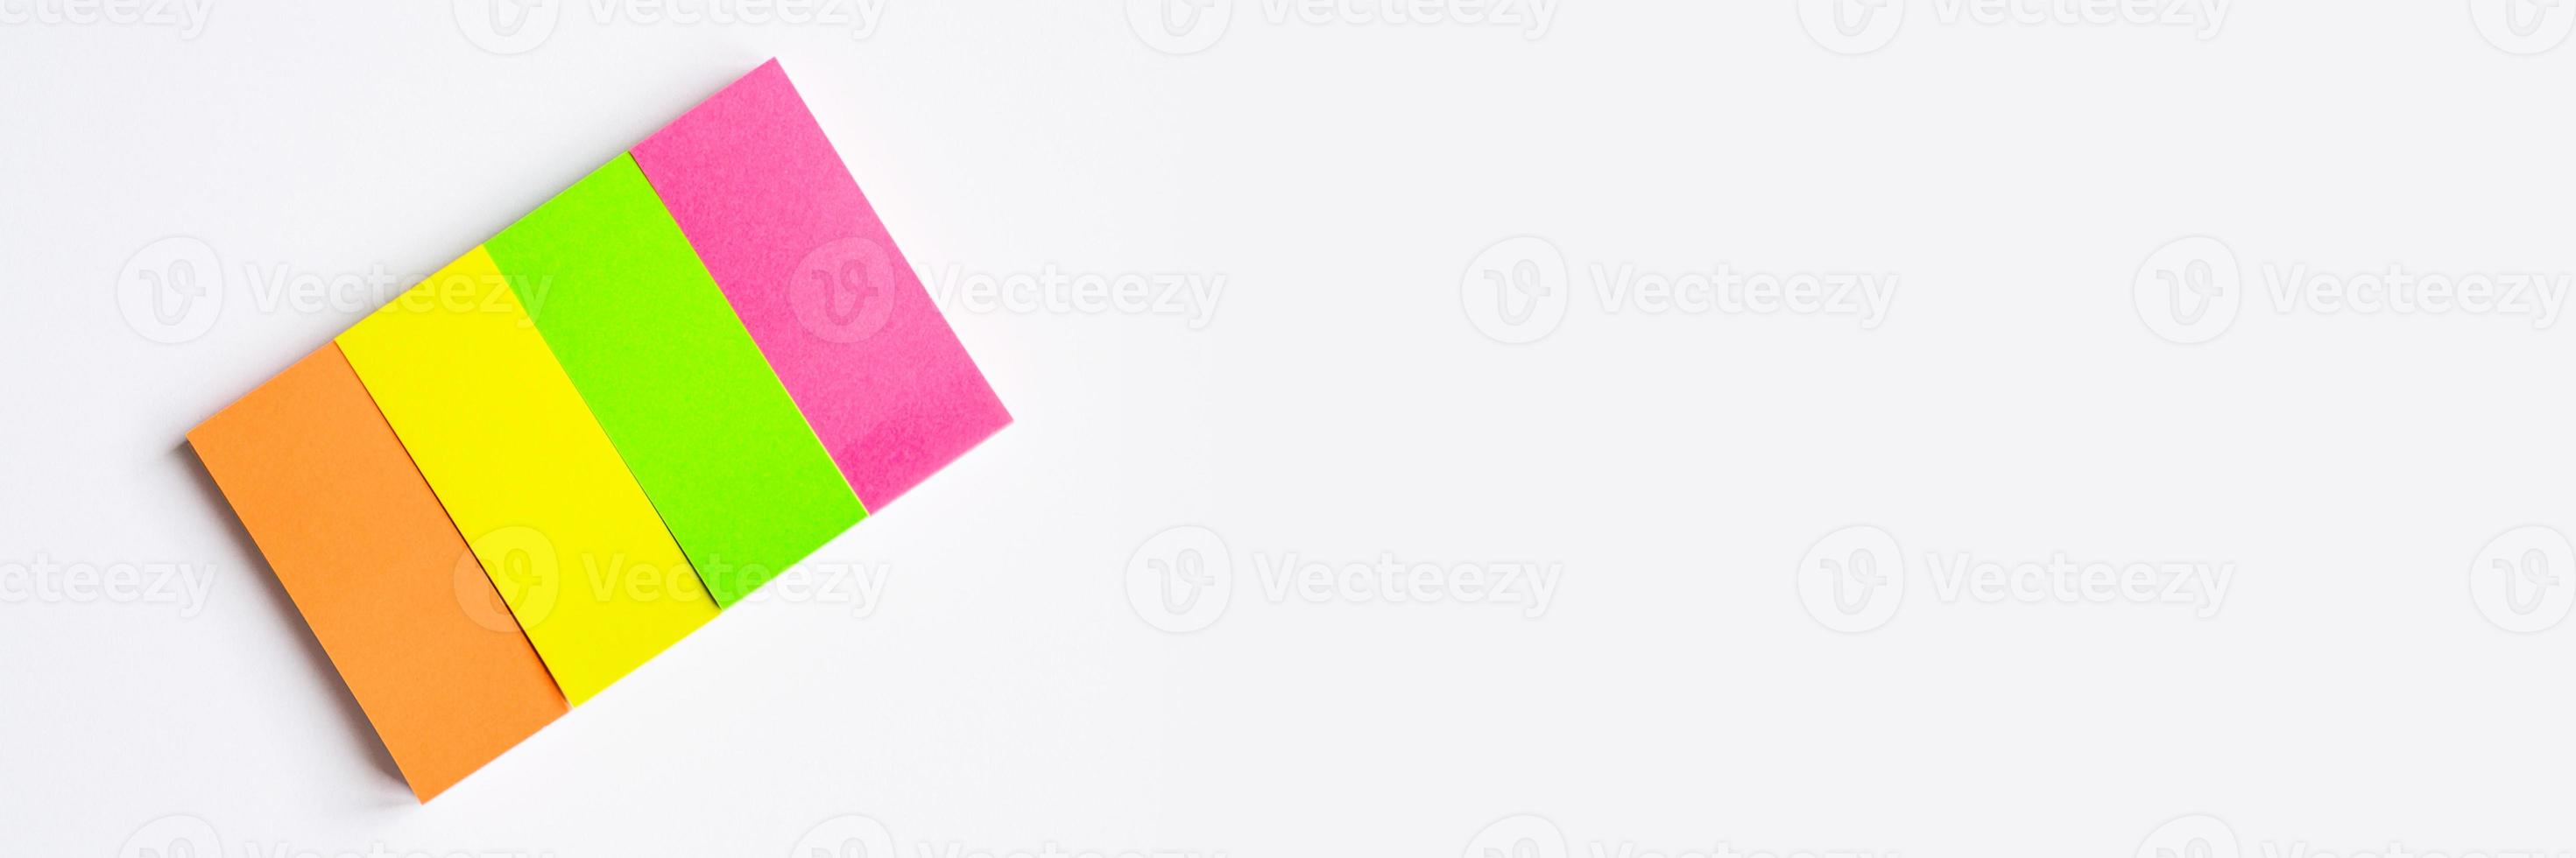 Notes stationnaires multicolores sur fond blanc photo